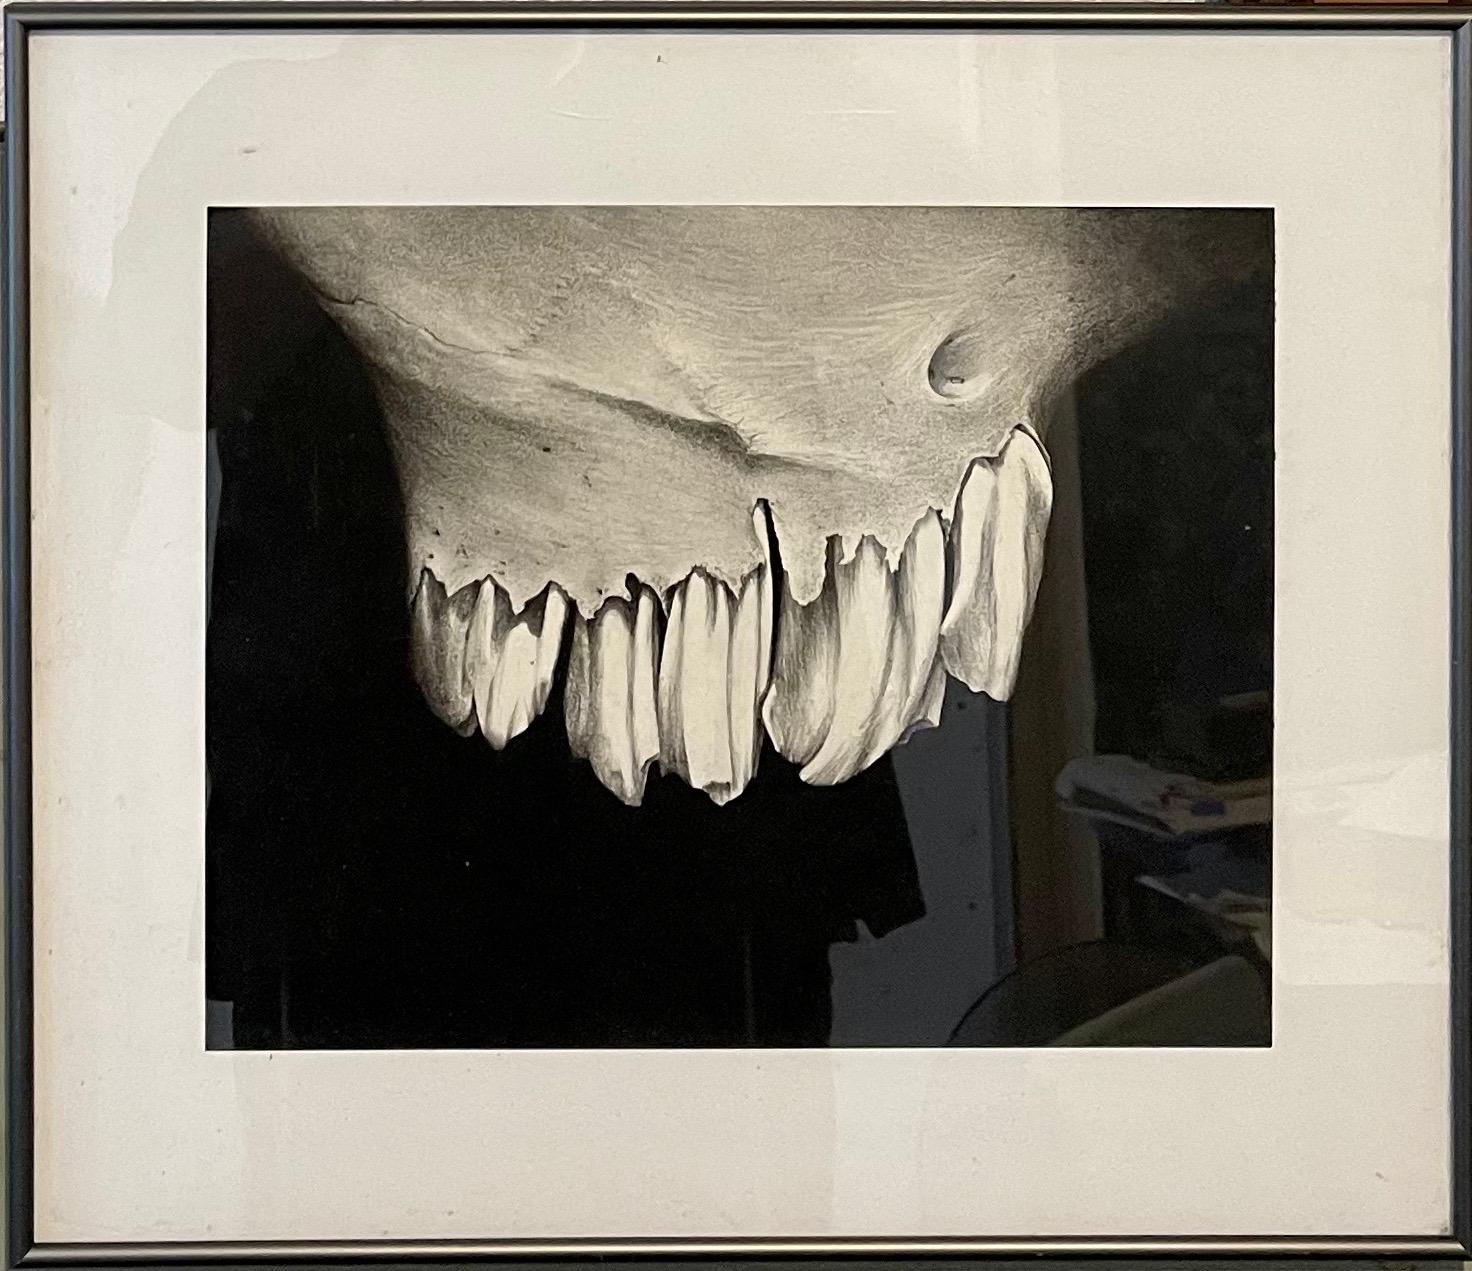 Zeichenkohle Zeichnung Abstrakte Teeth Bone Erica Child Prudhomme Amerikanische Frau Künstlerin